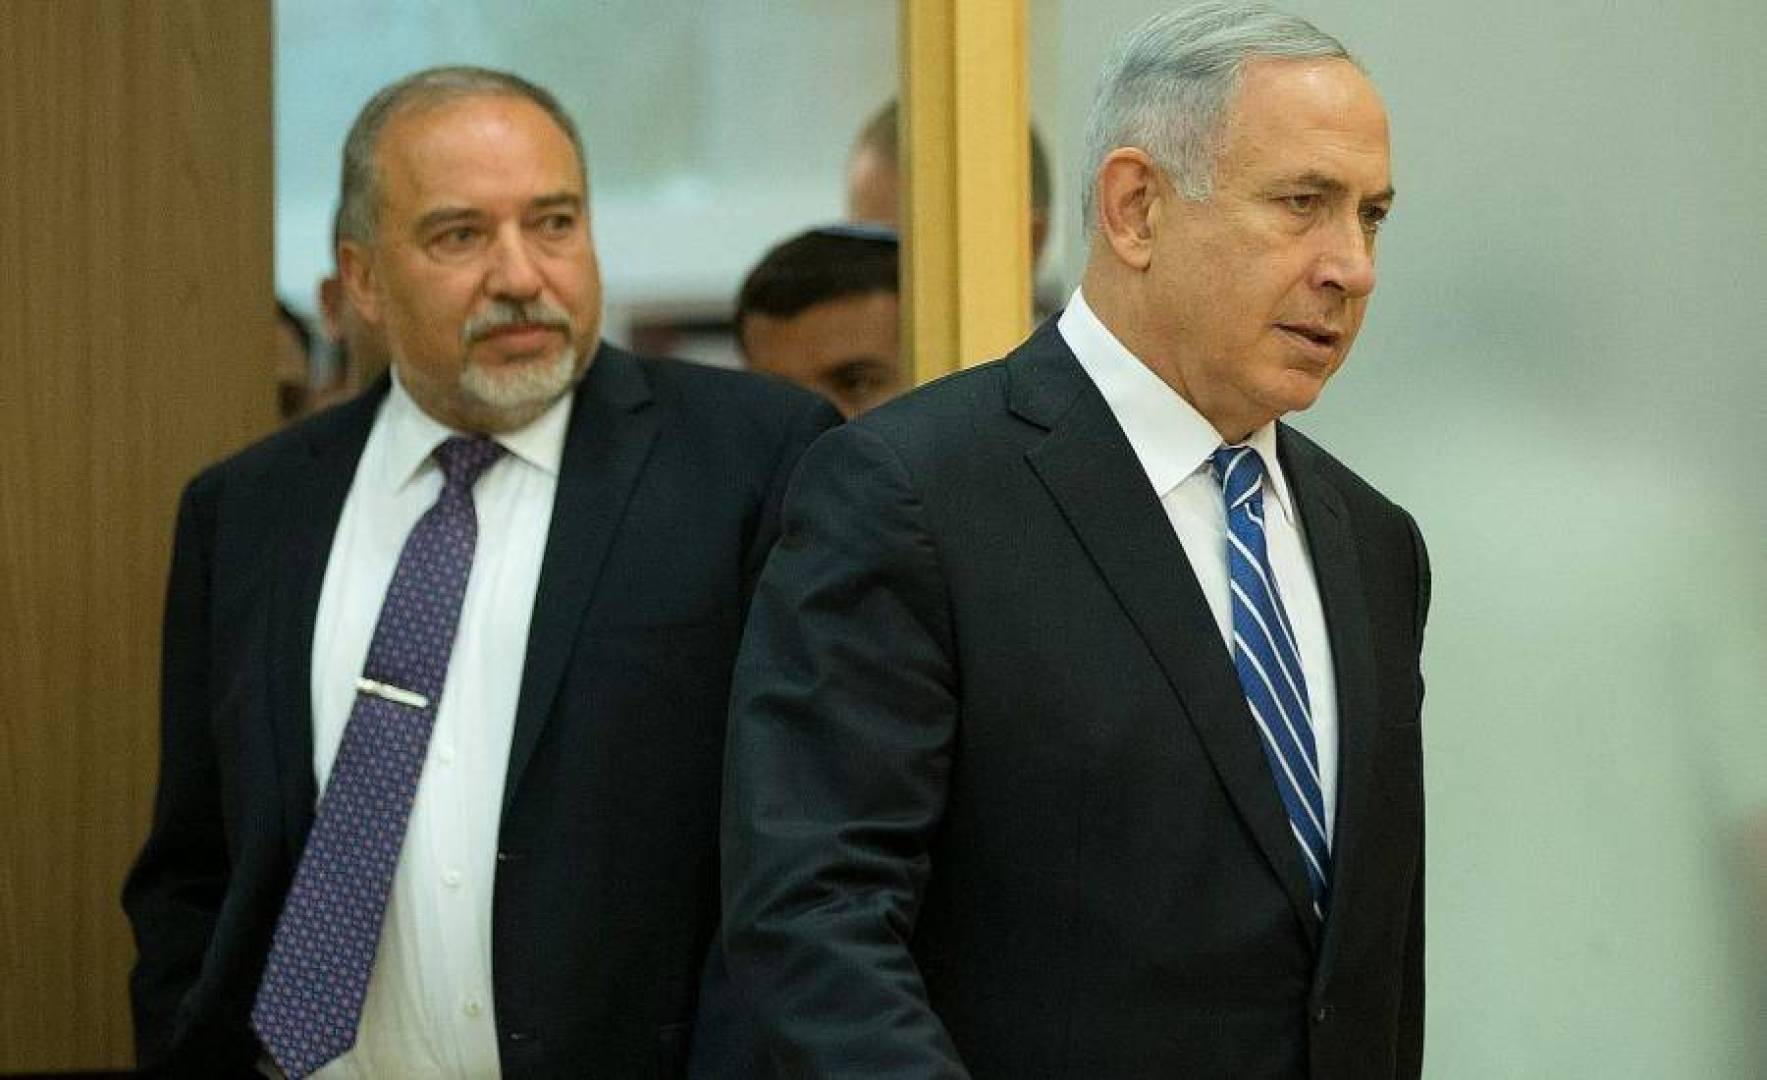 ليبرمان: حكومة إسرائيل انتهت والتخلص من نتنياهو “مكافأة للشعب”